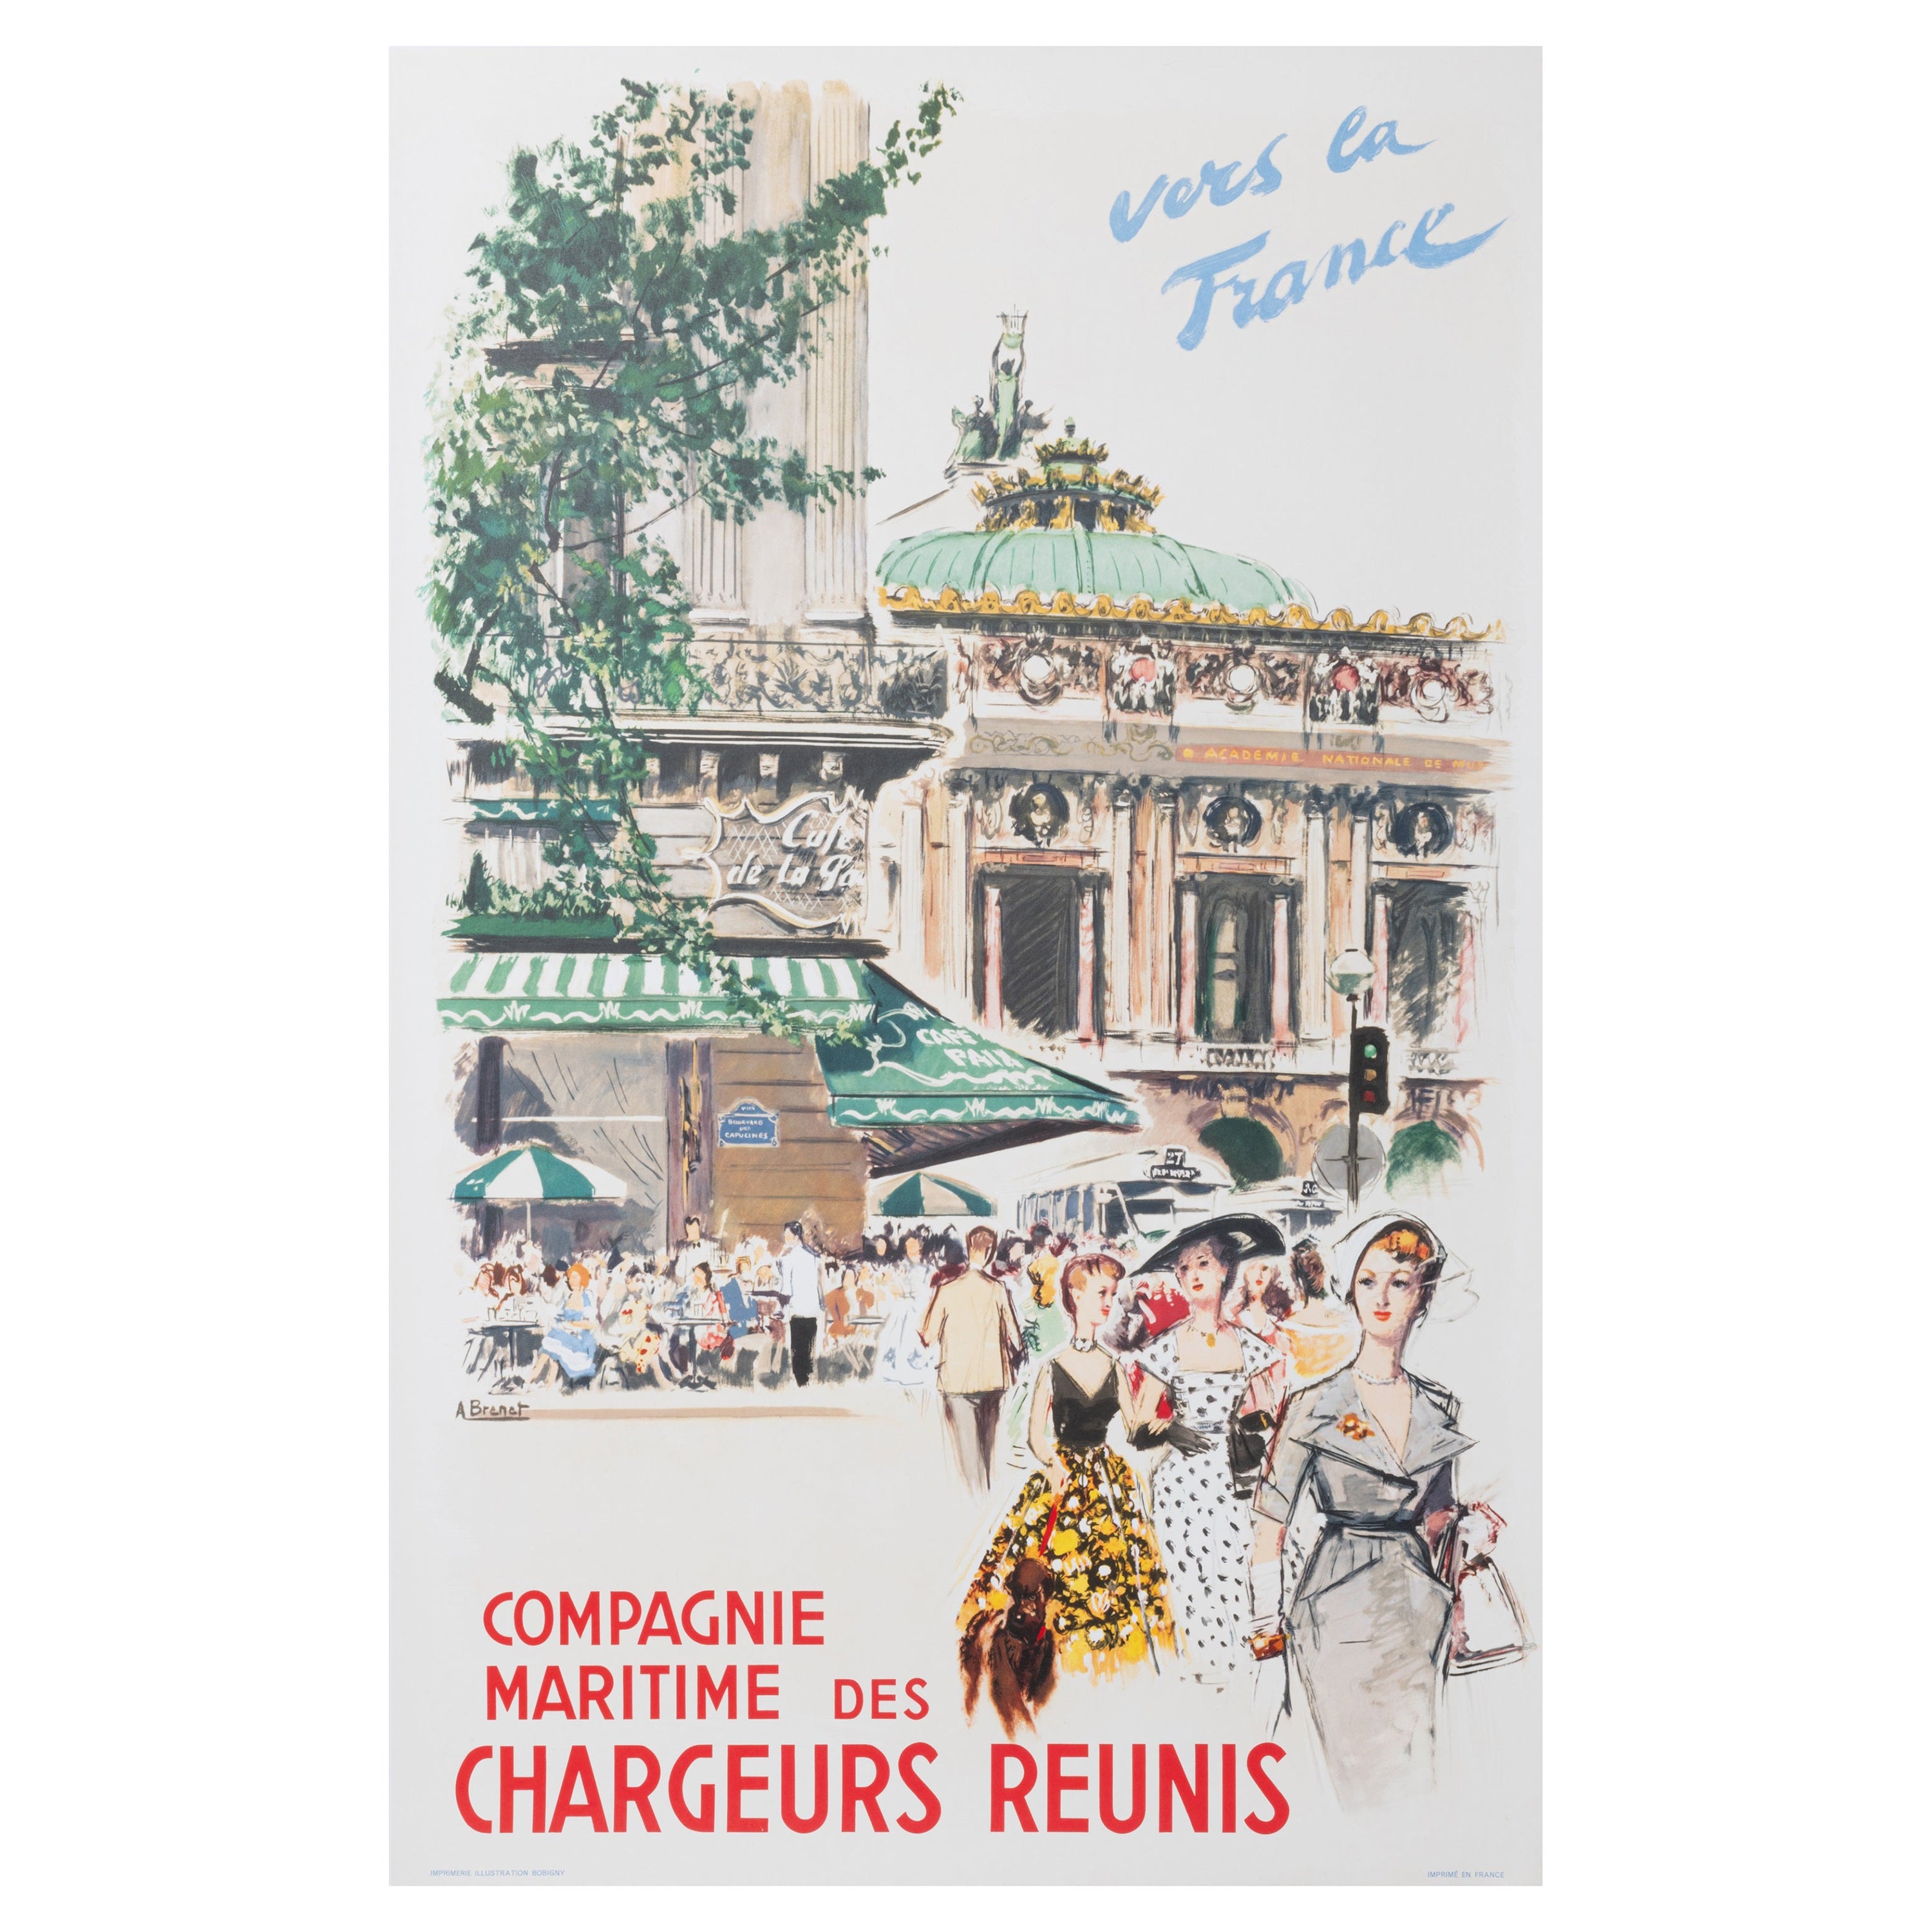 Brenet, Original Bootsplakat, Paris Cafe Paix Opera Garnier, Chargeur Reuni 1950